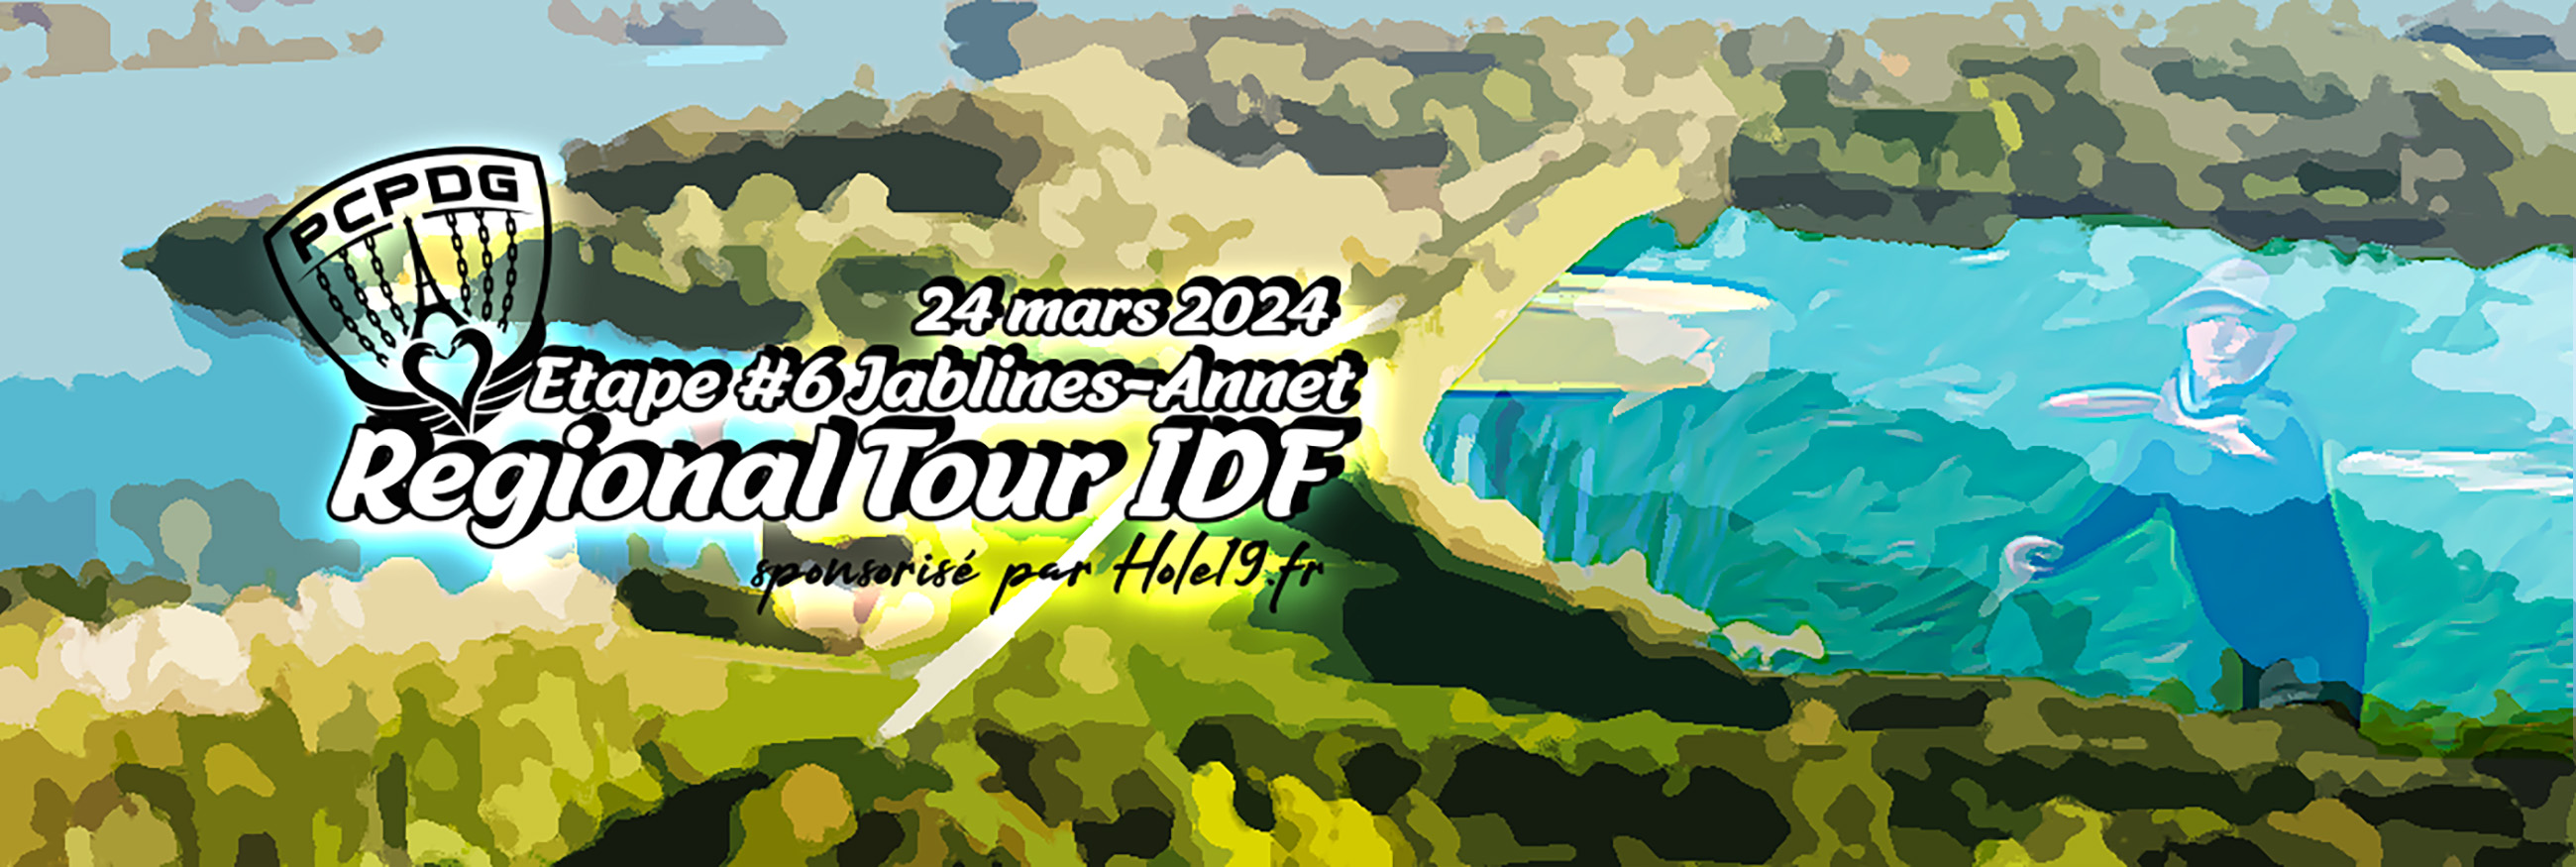 Régional Tour LFD Île de France 2023-2024 #6 à Jablines